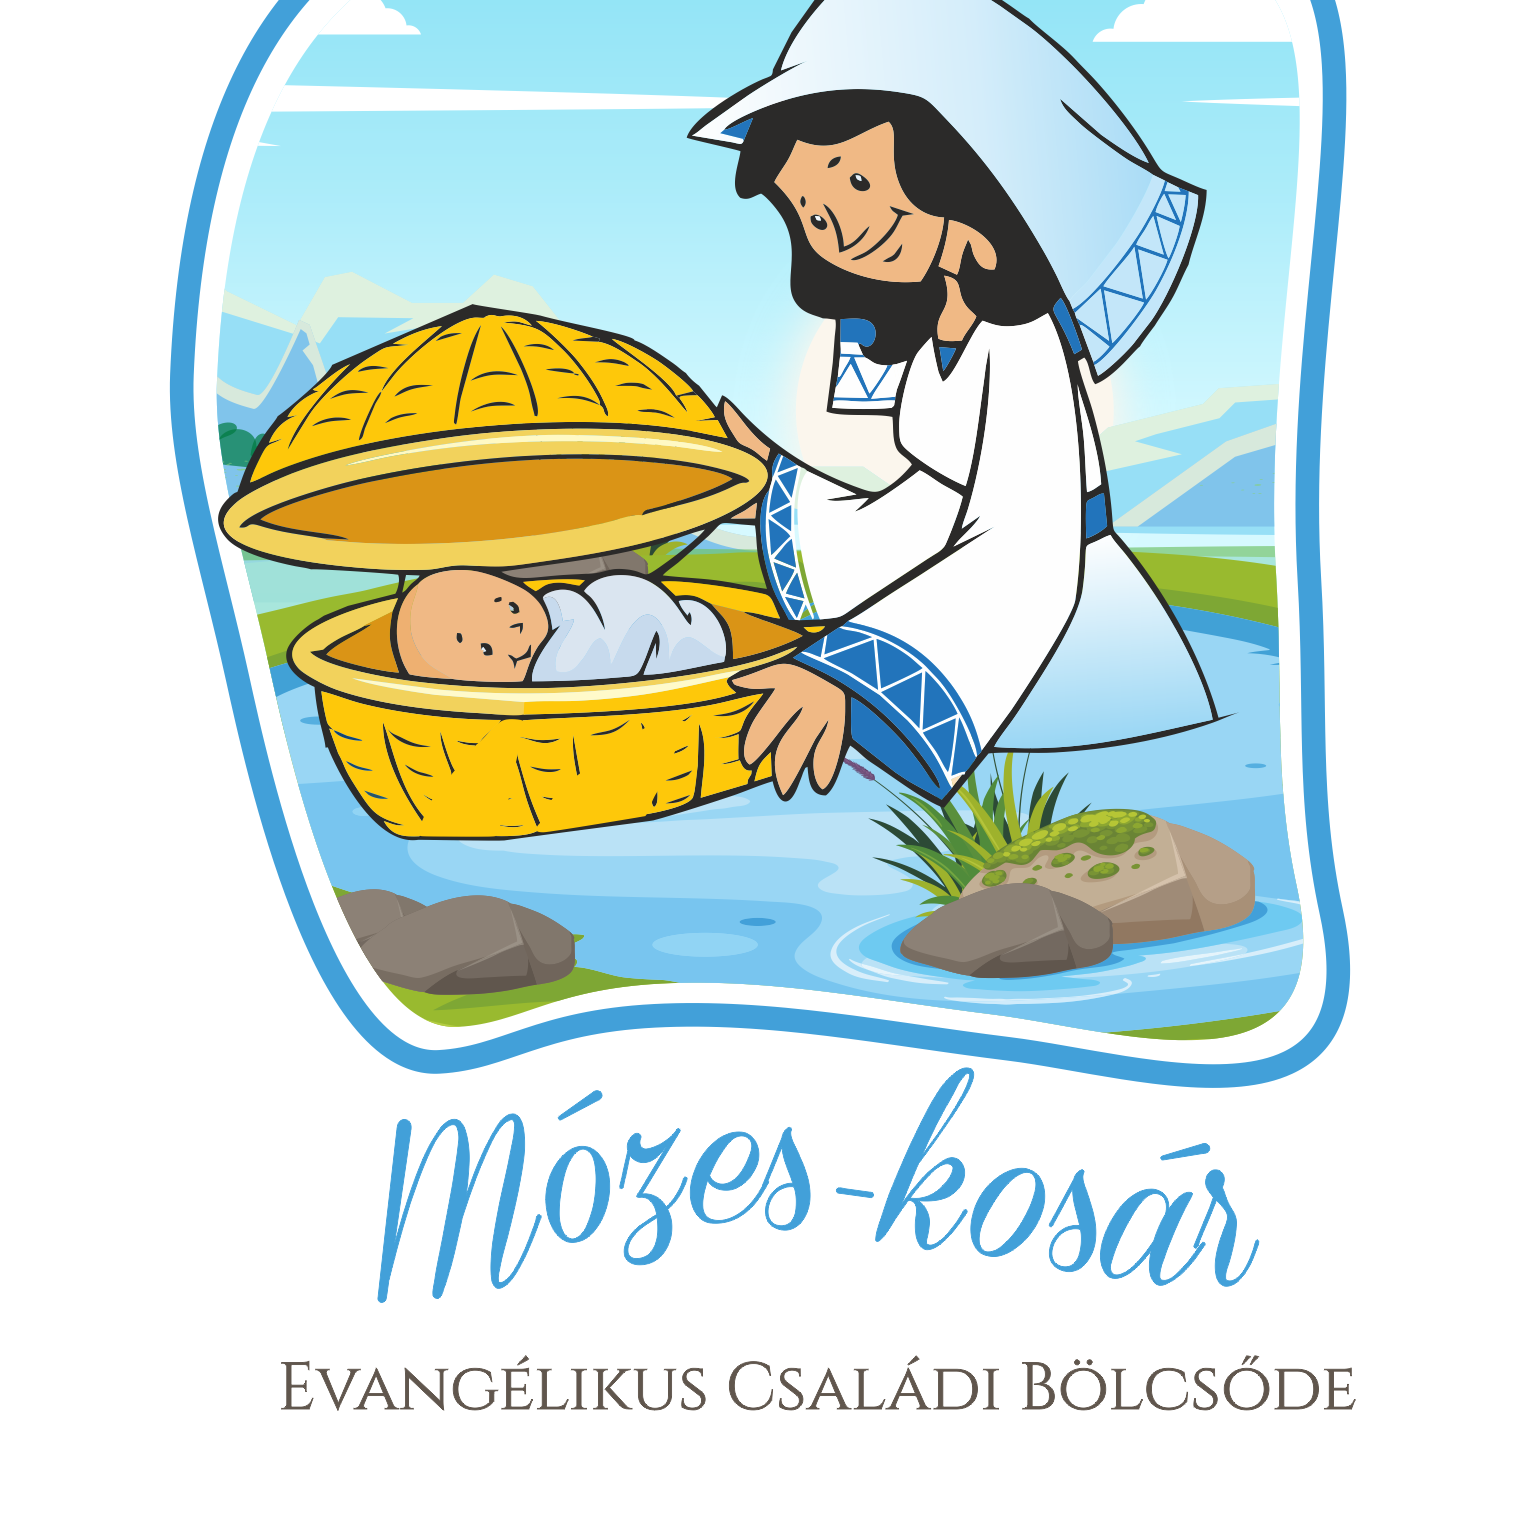 Mózes-kosár Evangélikus Családi Bölcsőde